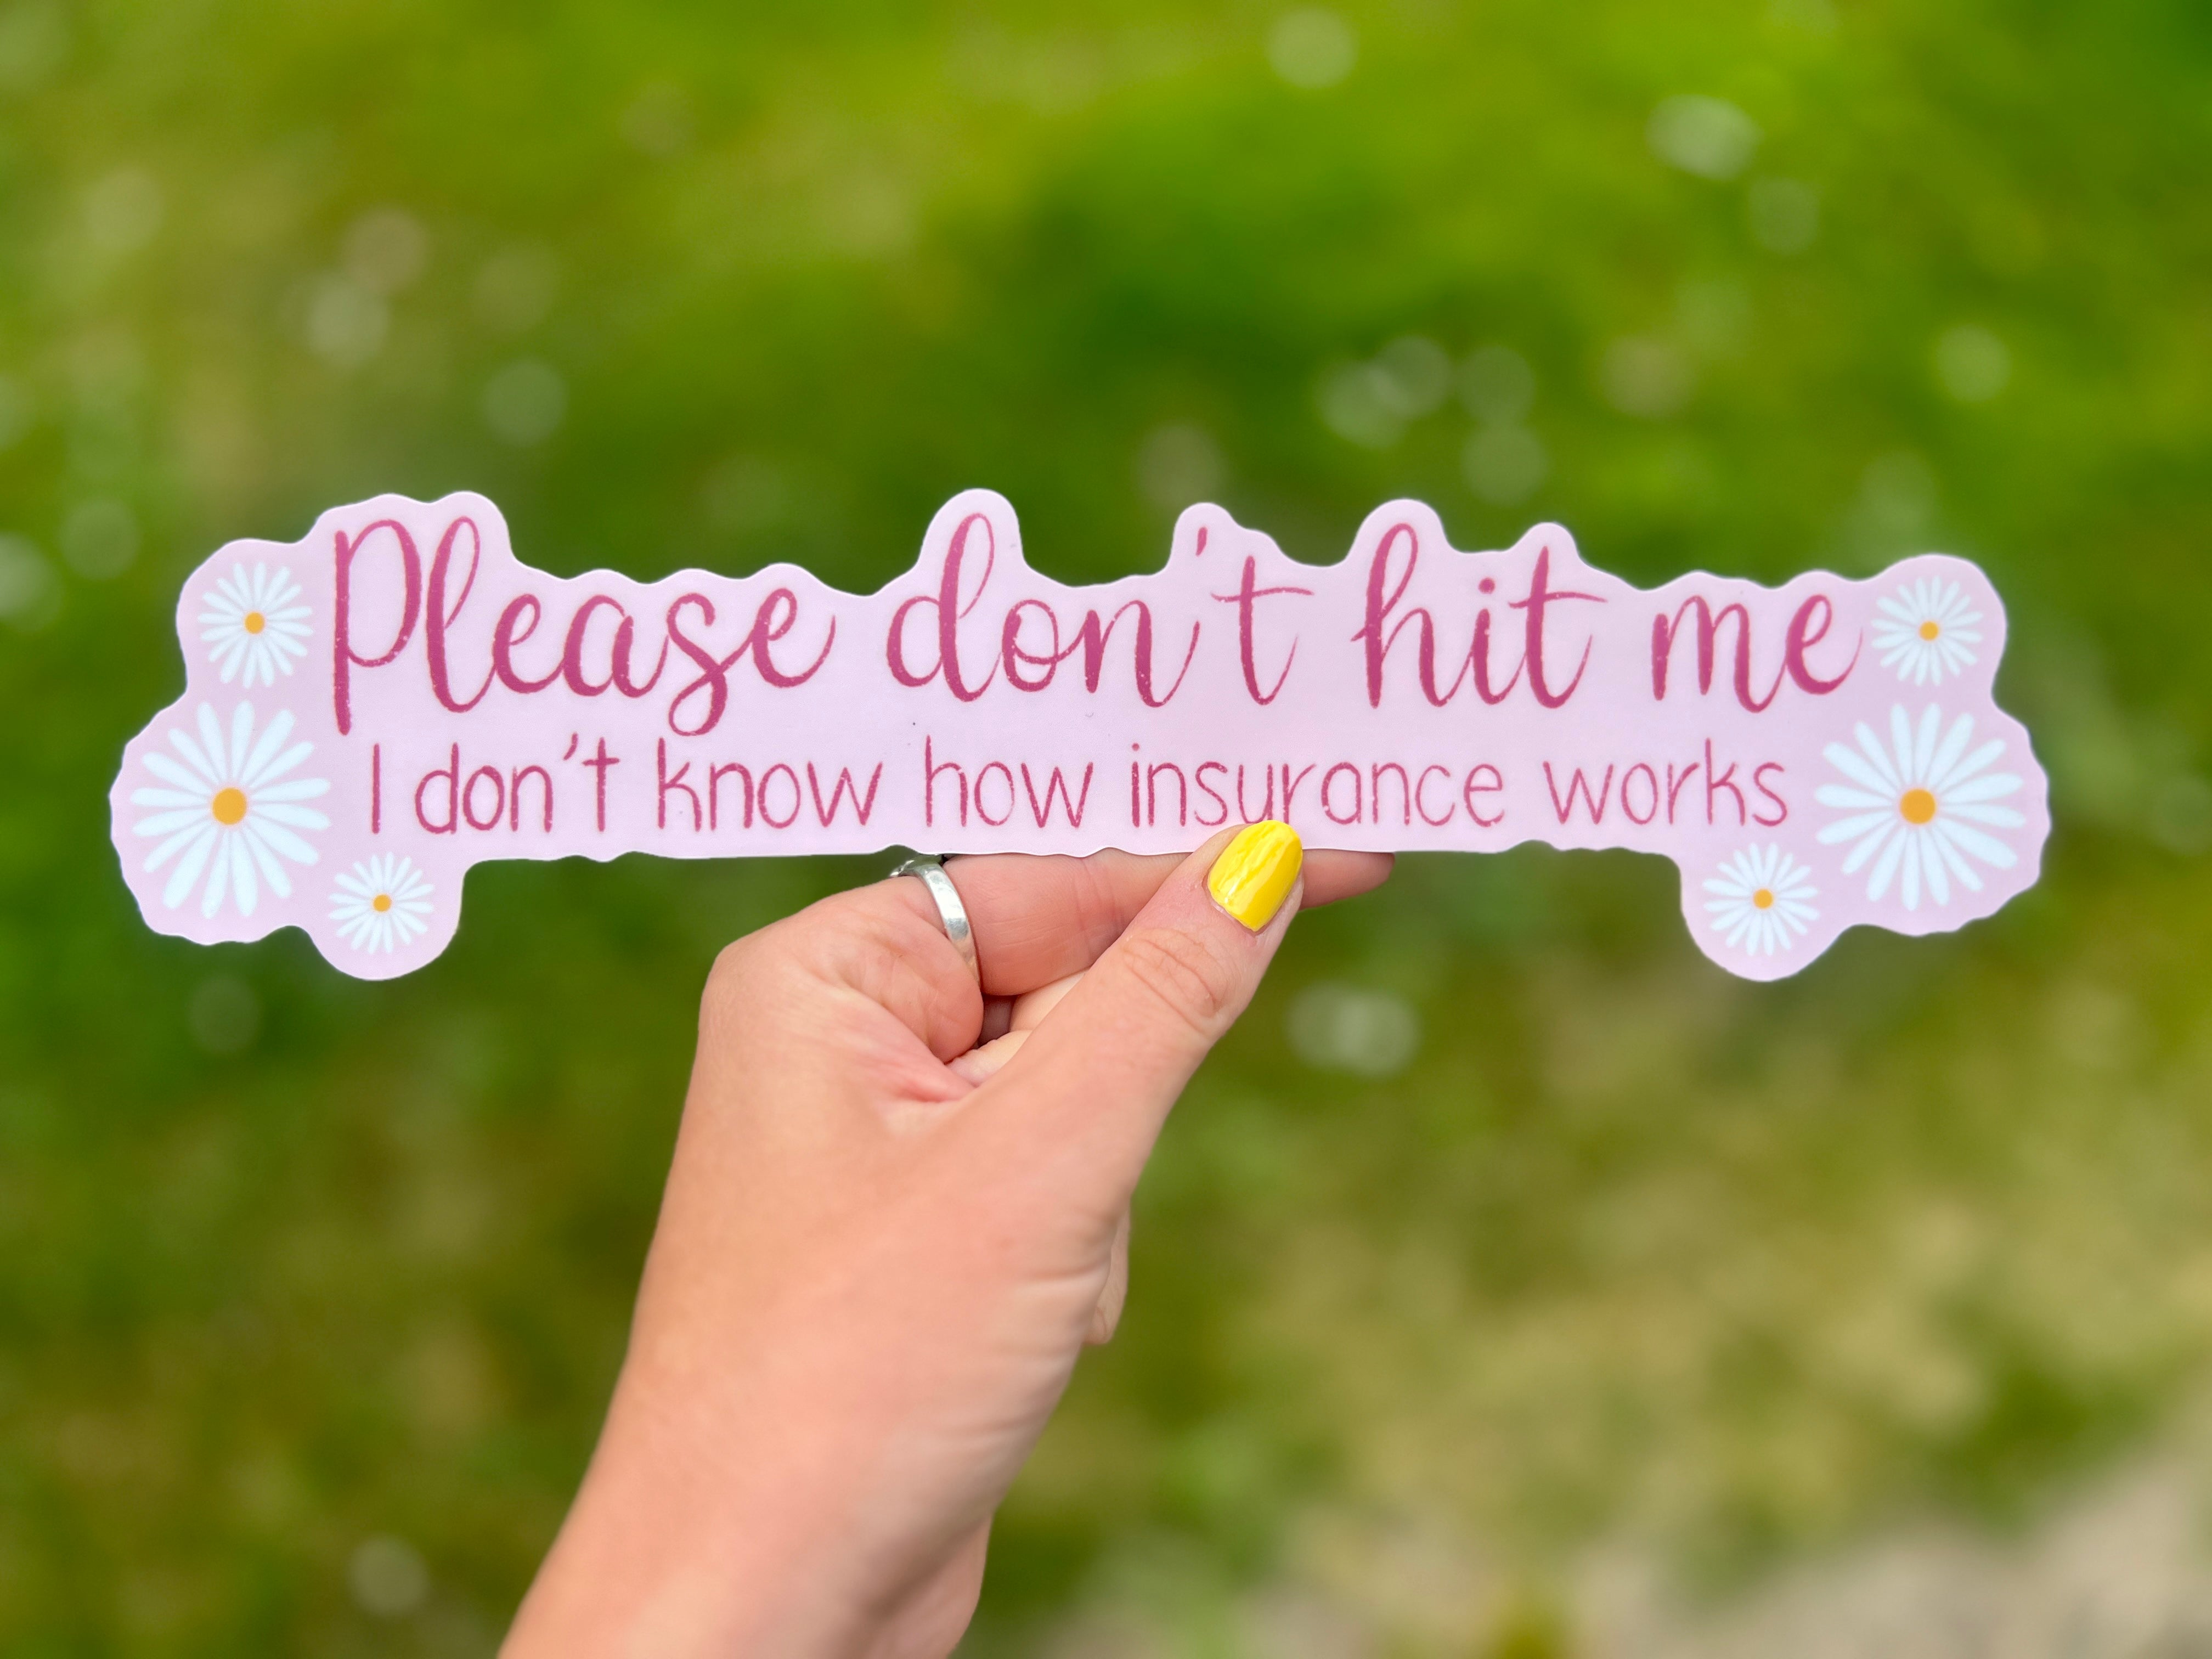 "Please don't hit me" - Vinyl Bumper Sticker